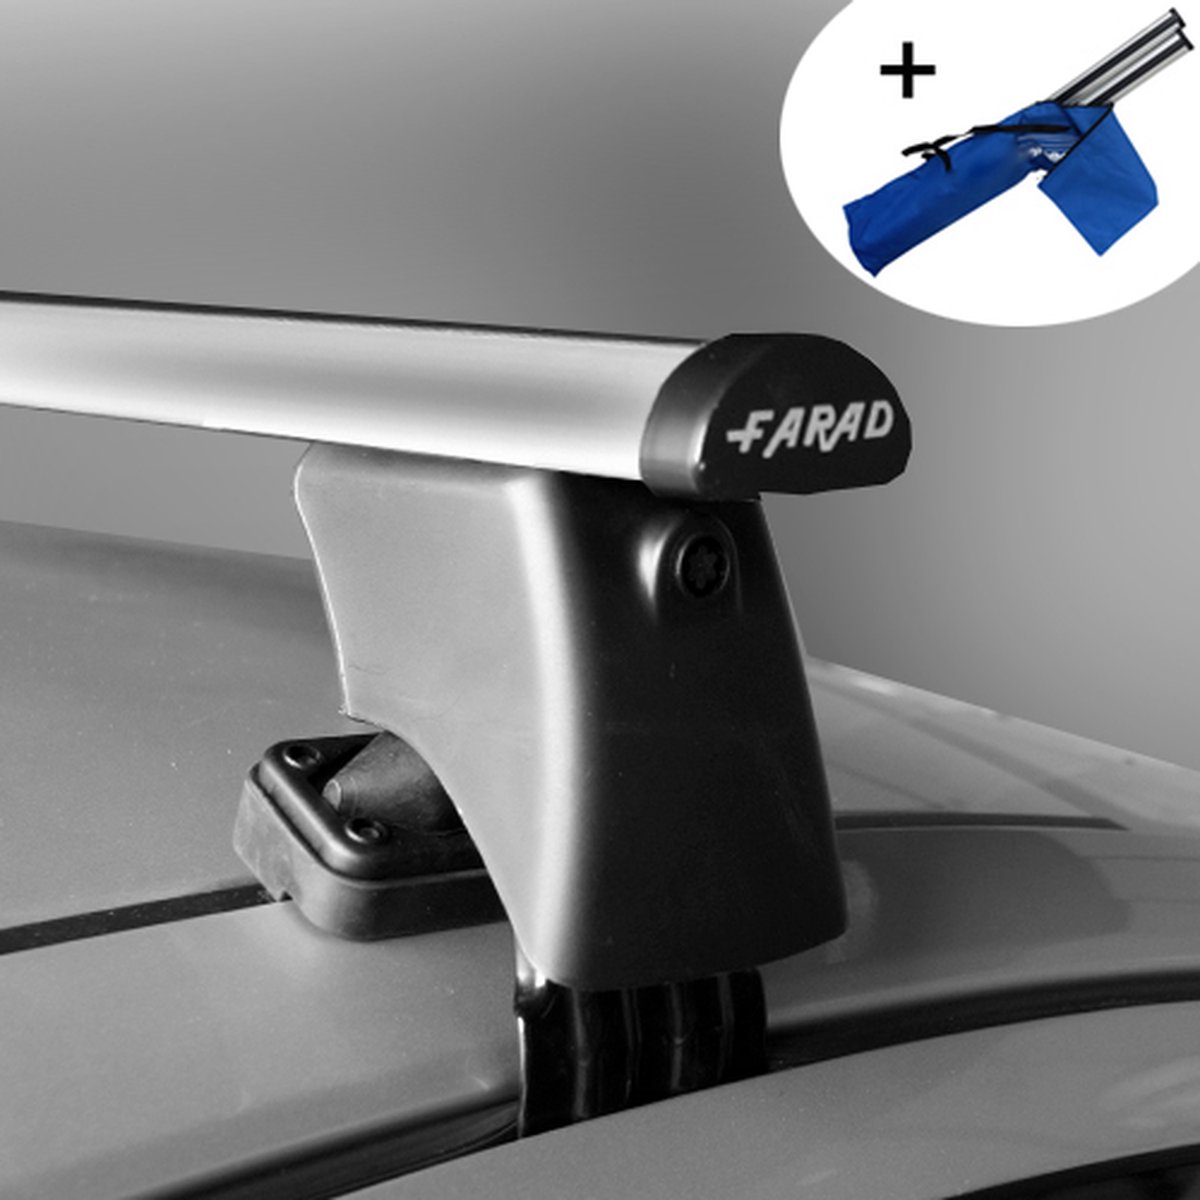 Dakdragers geschikt voor Kia Rio 5 deurs hatchback vanaf 2017 - Aluminium - inclusief dakdrager opbergtas